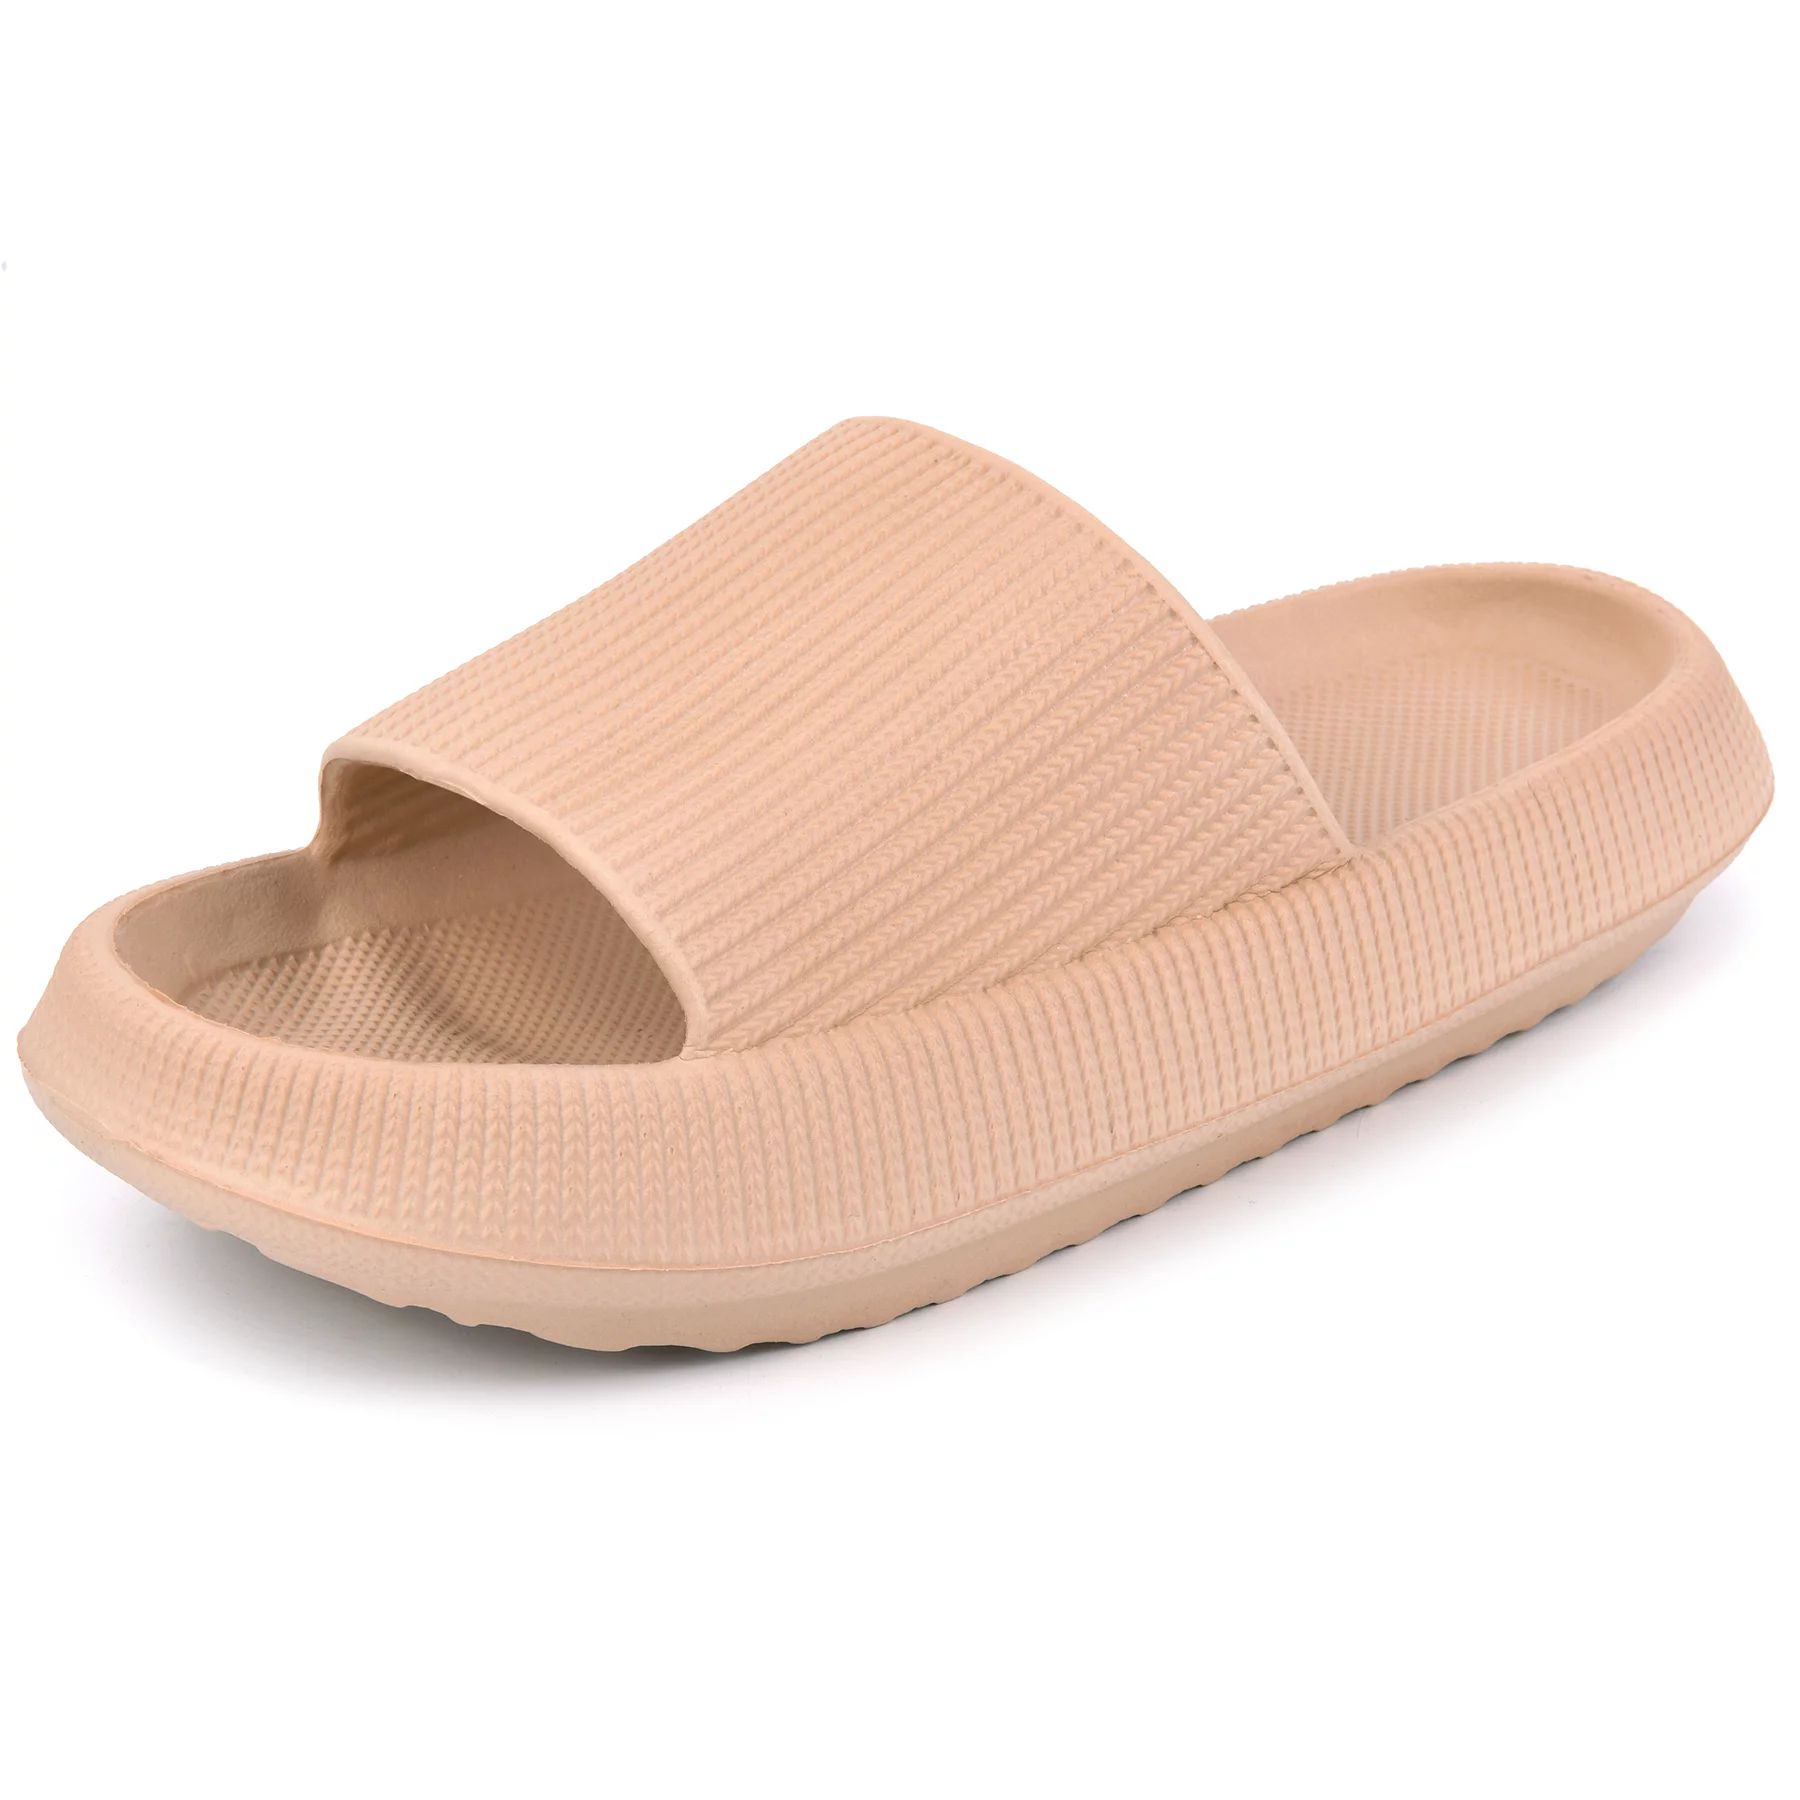 VonmayVONMAY Unisex Slides Sandals Soft Thick Sole Non-Slip Pillow SandalsUSDNow $12.99was $32.99... | Walmart (US)